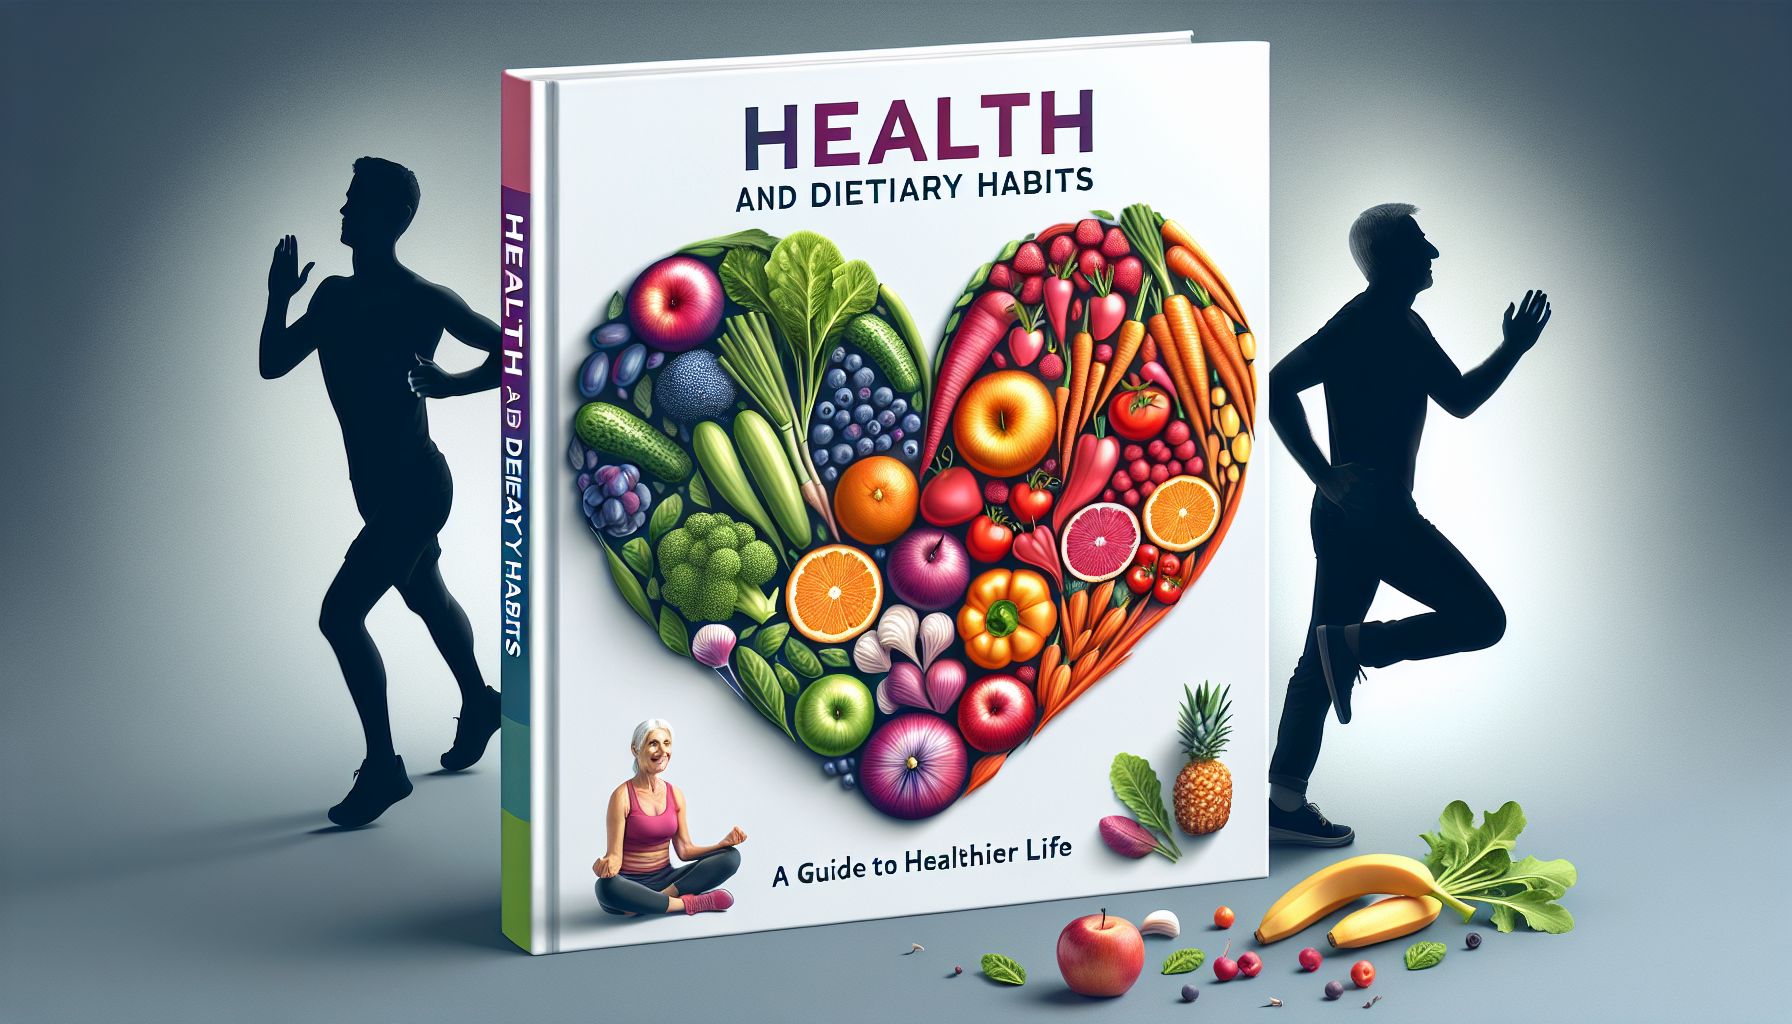 Sundhed og kostvaner: En guide til et sundere liv